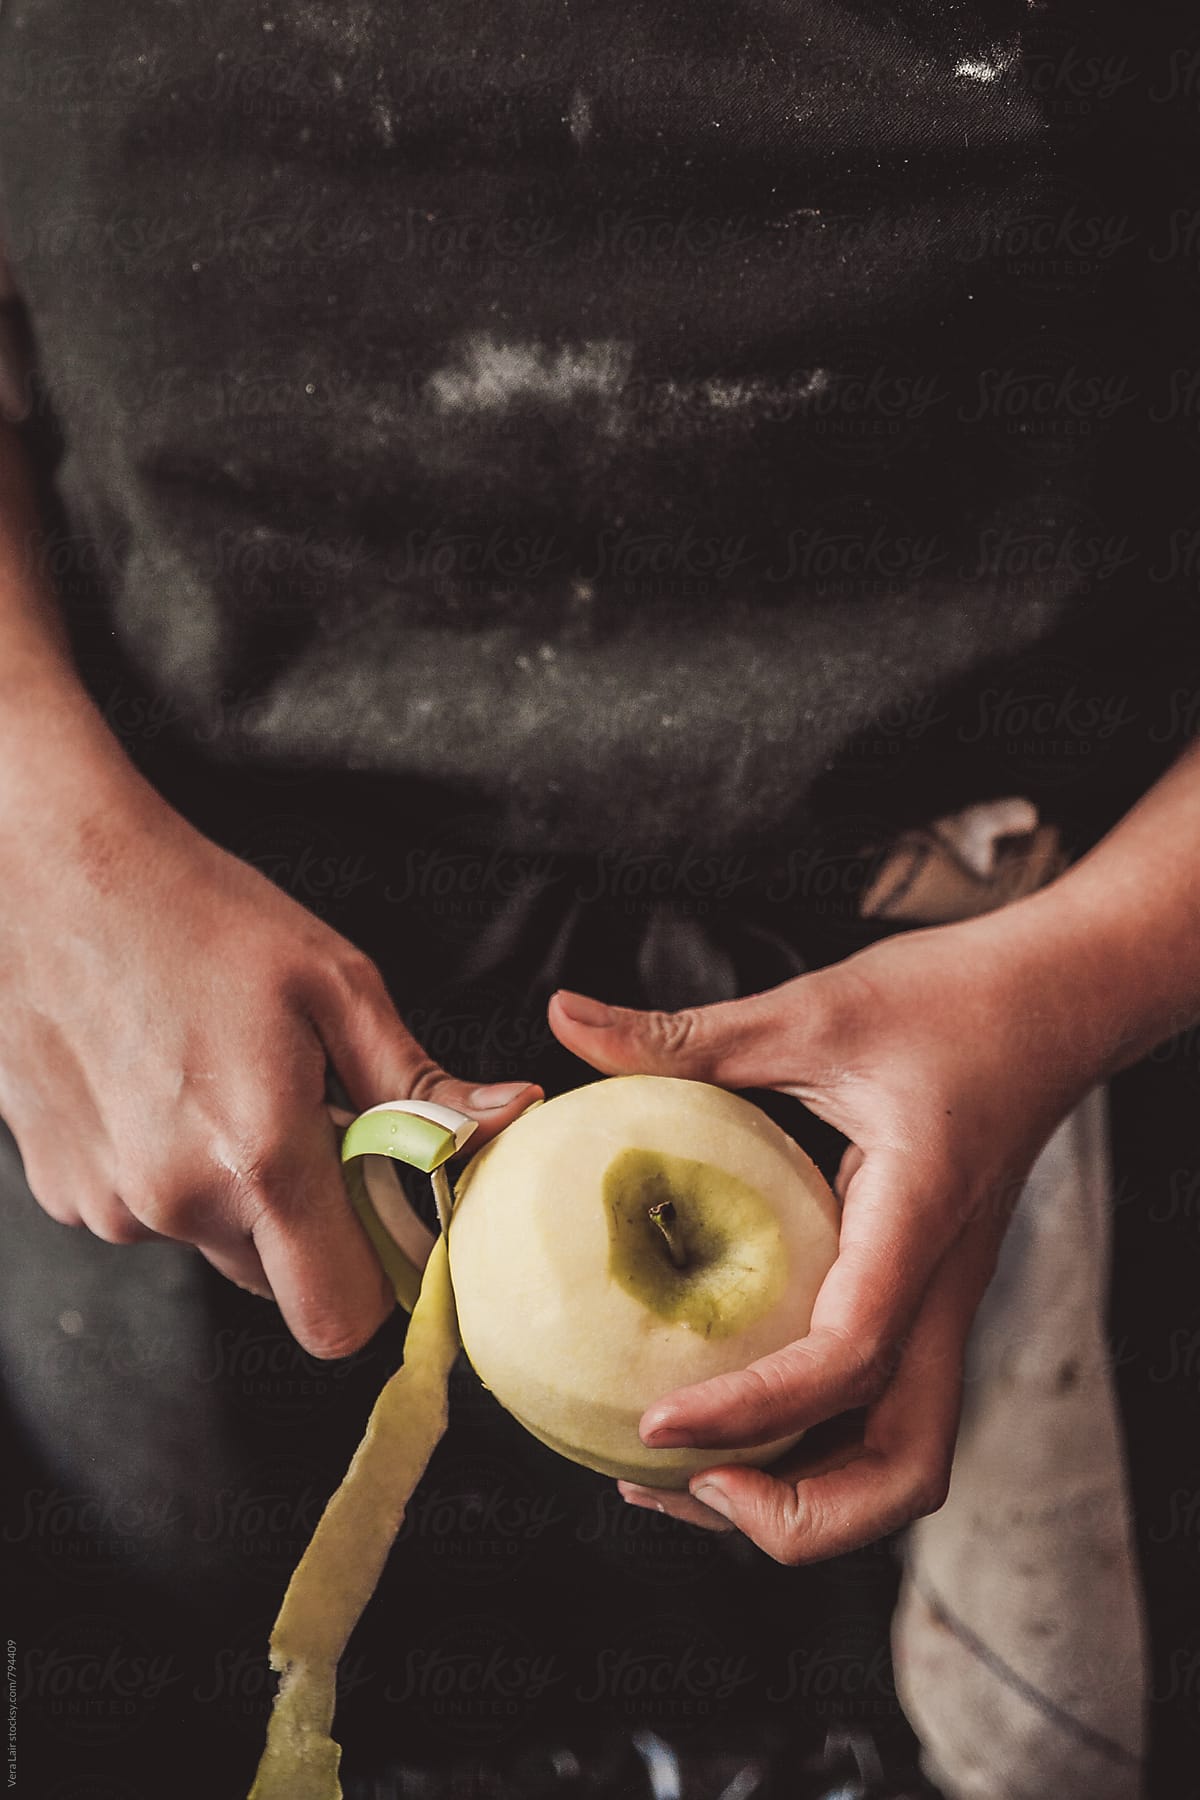 Hands peeling a apple